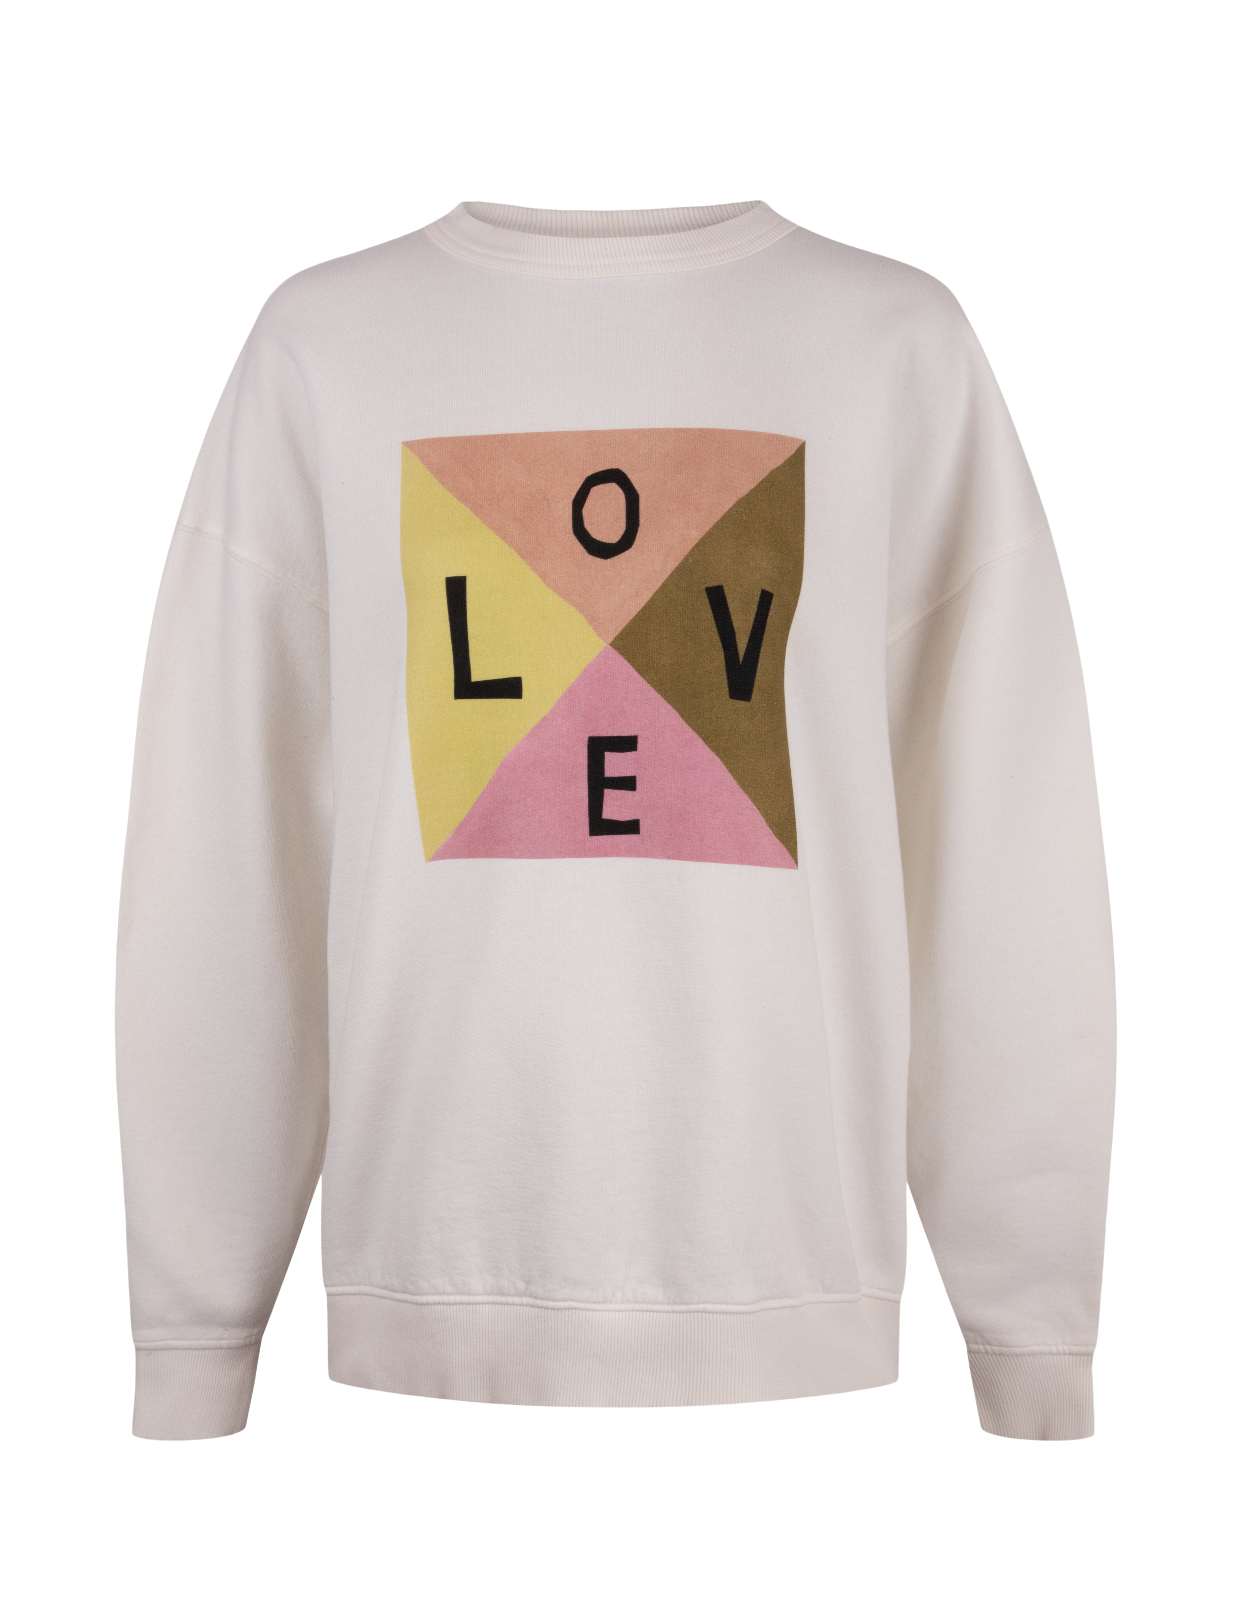 Iwa Love Sweatshirt Offwhite